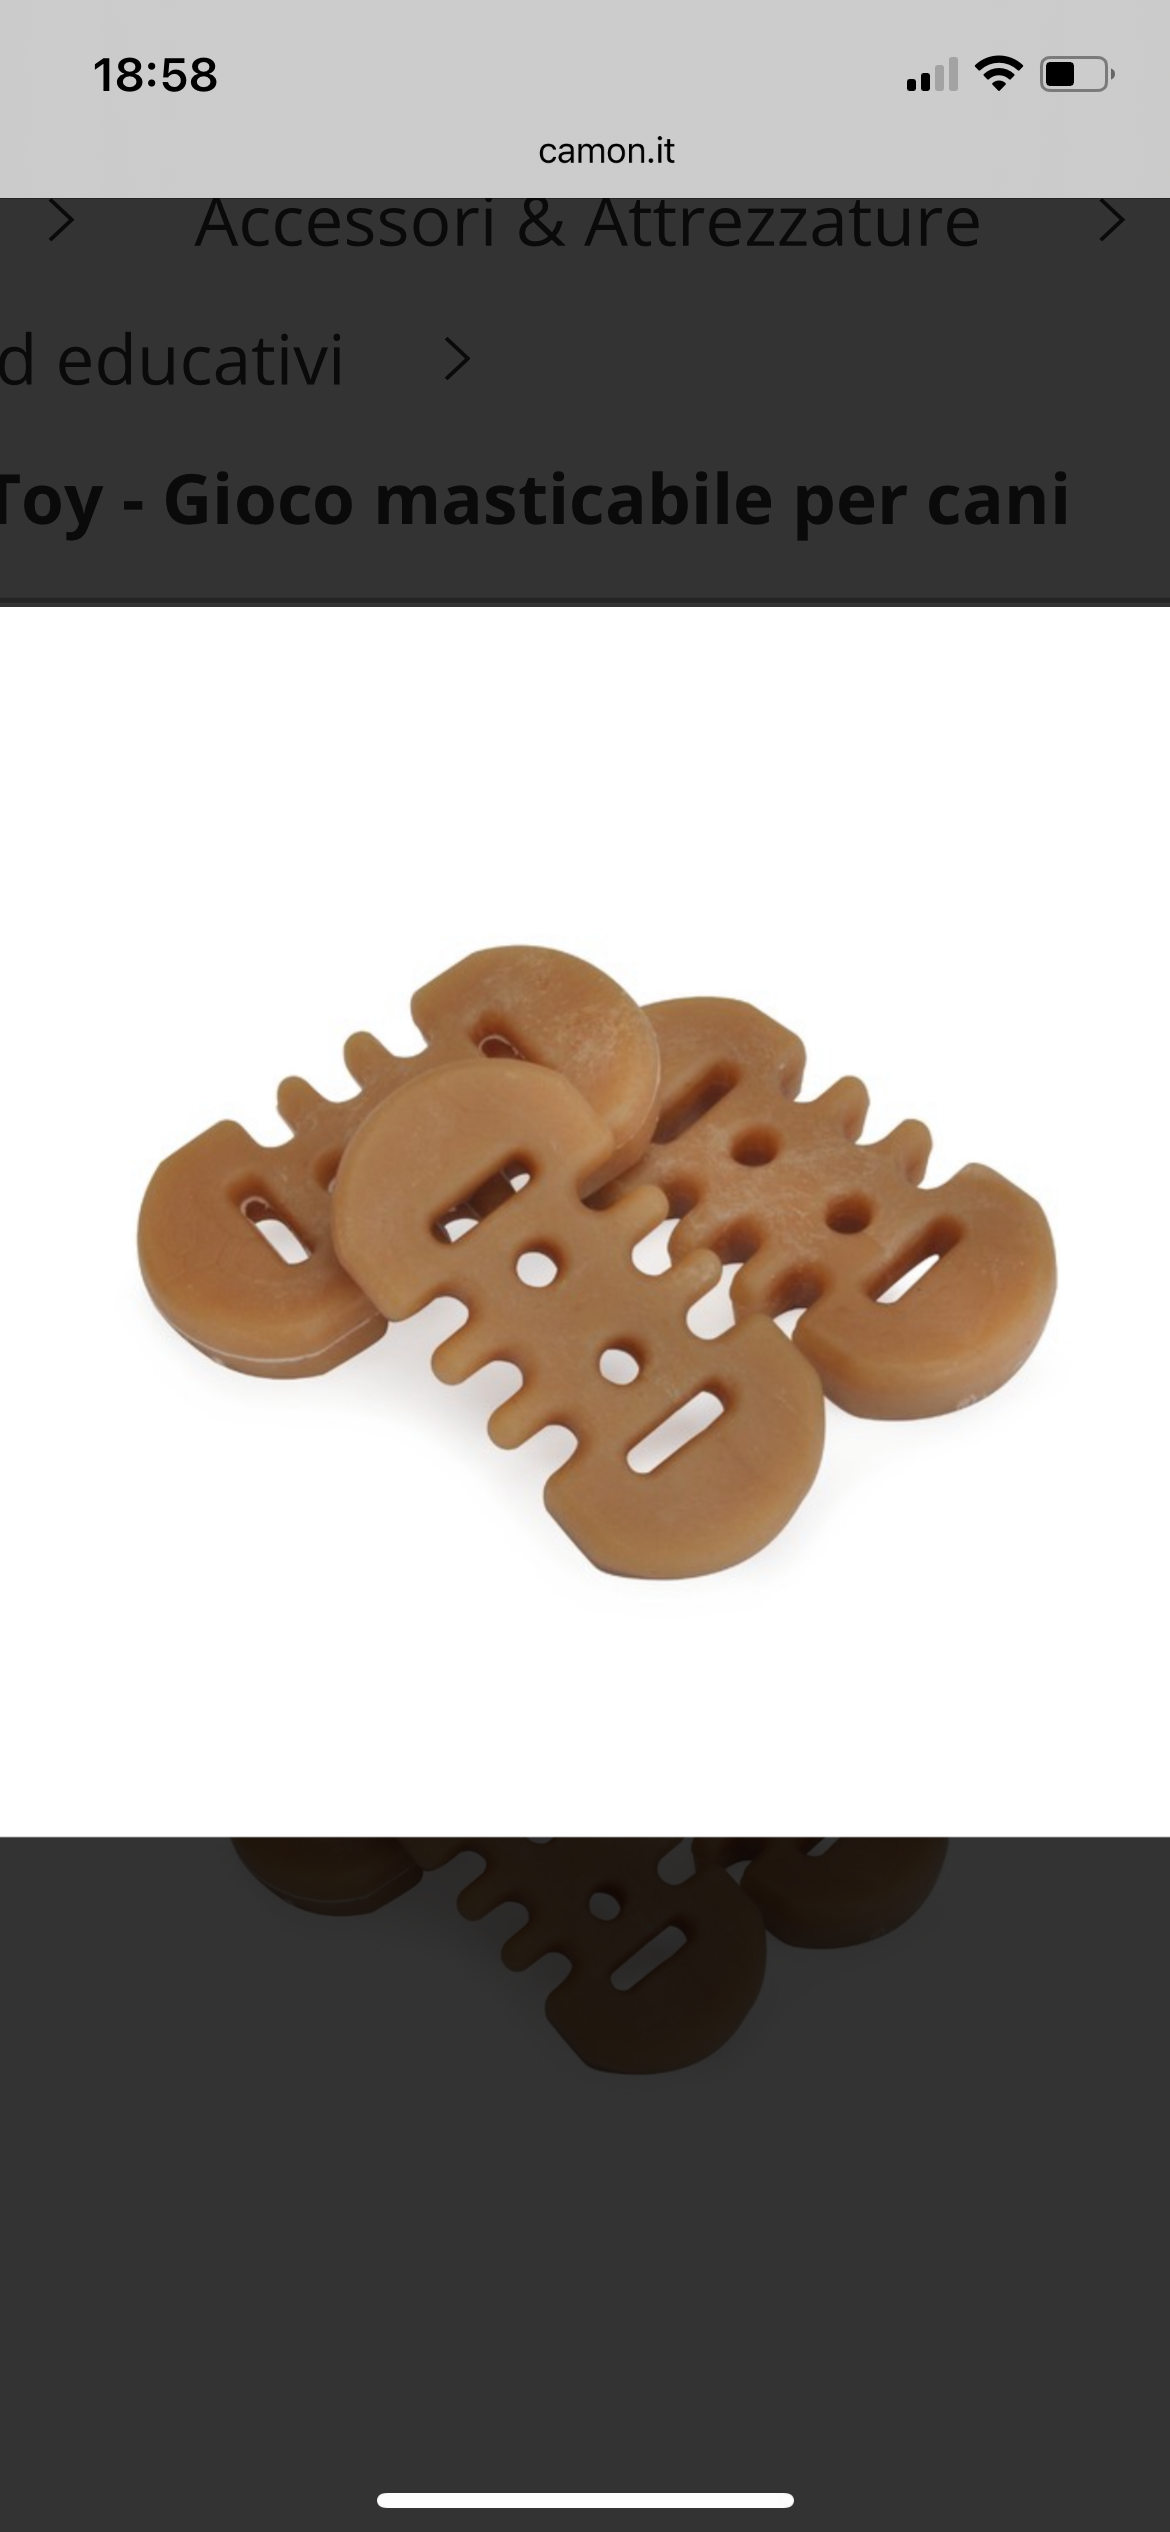 Gioco masticabile “Ginger Toy” - Camon